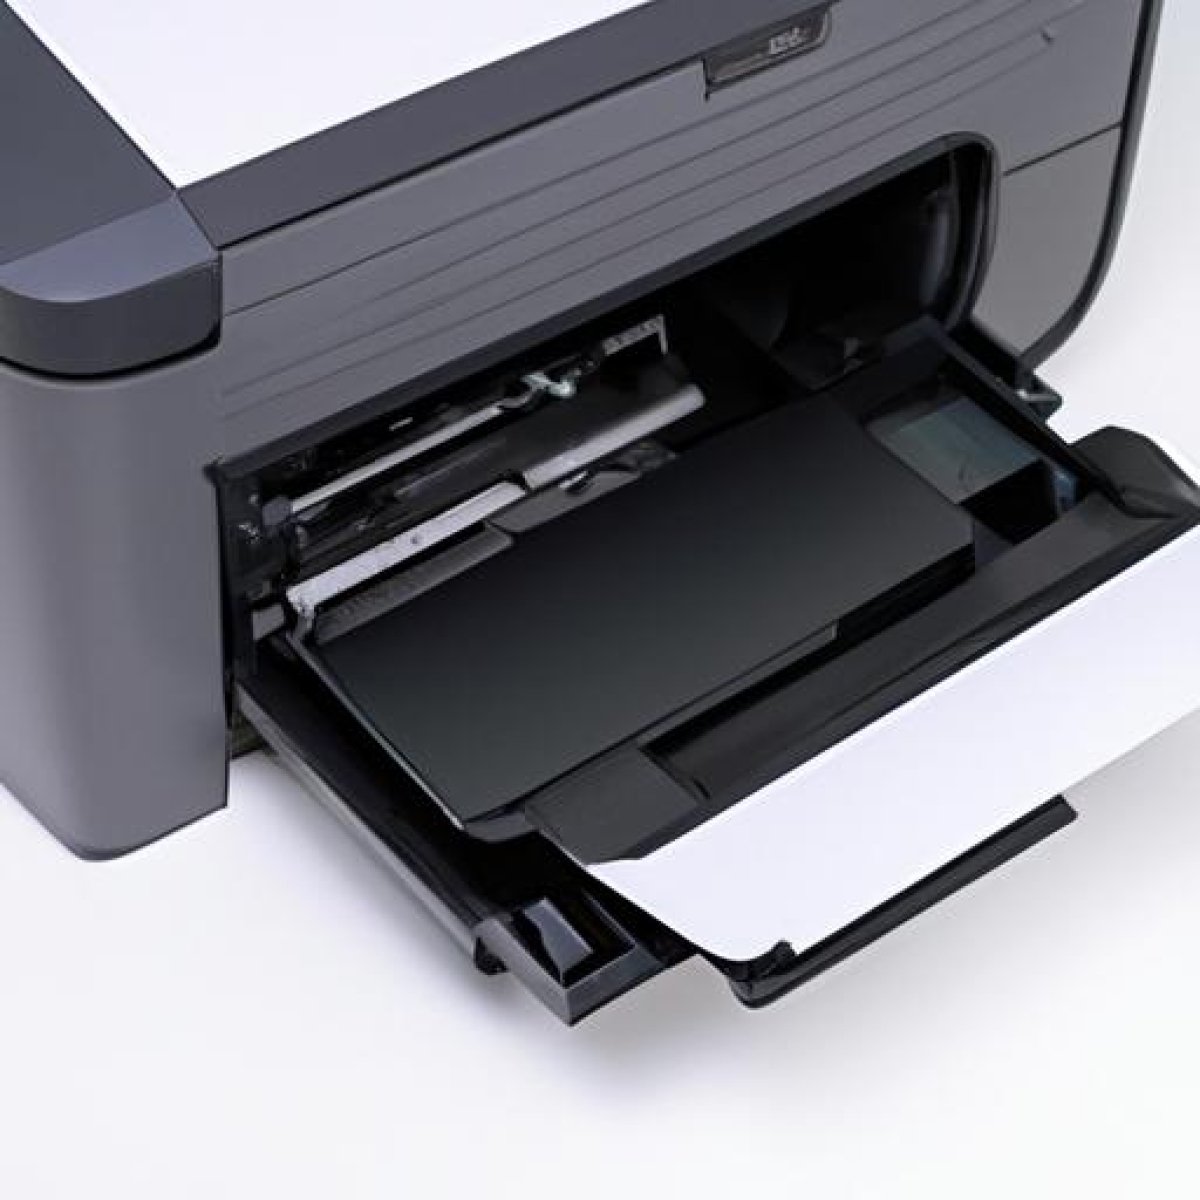 Mejores impresoras multifuncion para casa